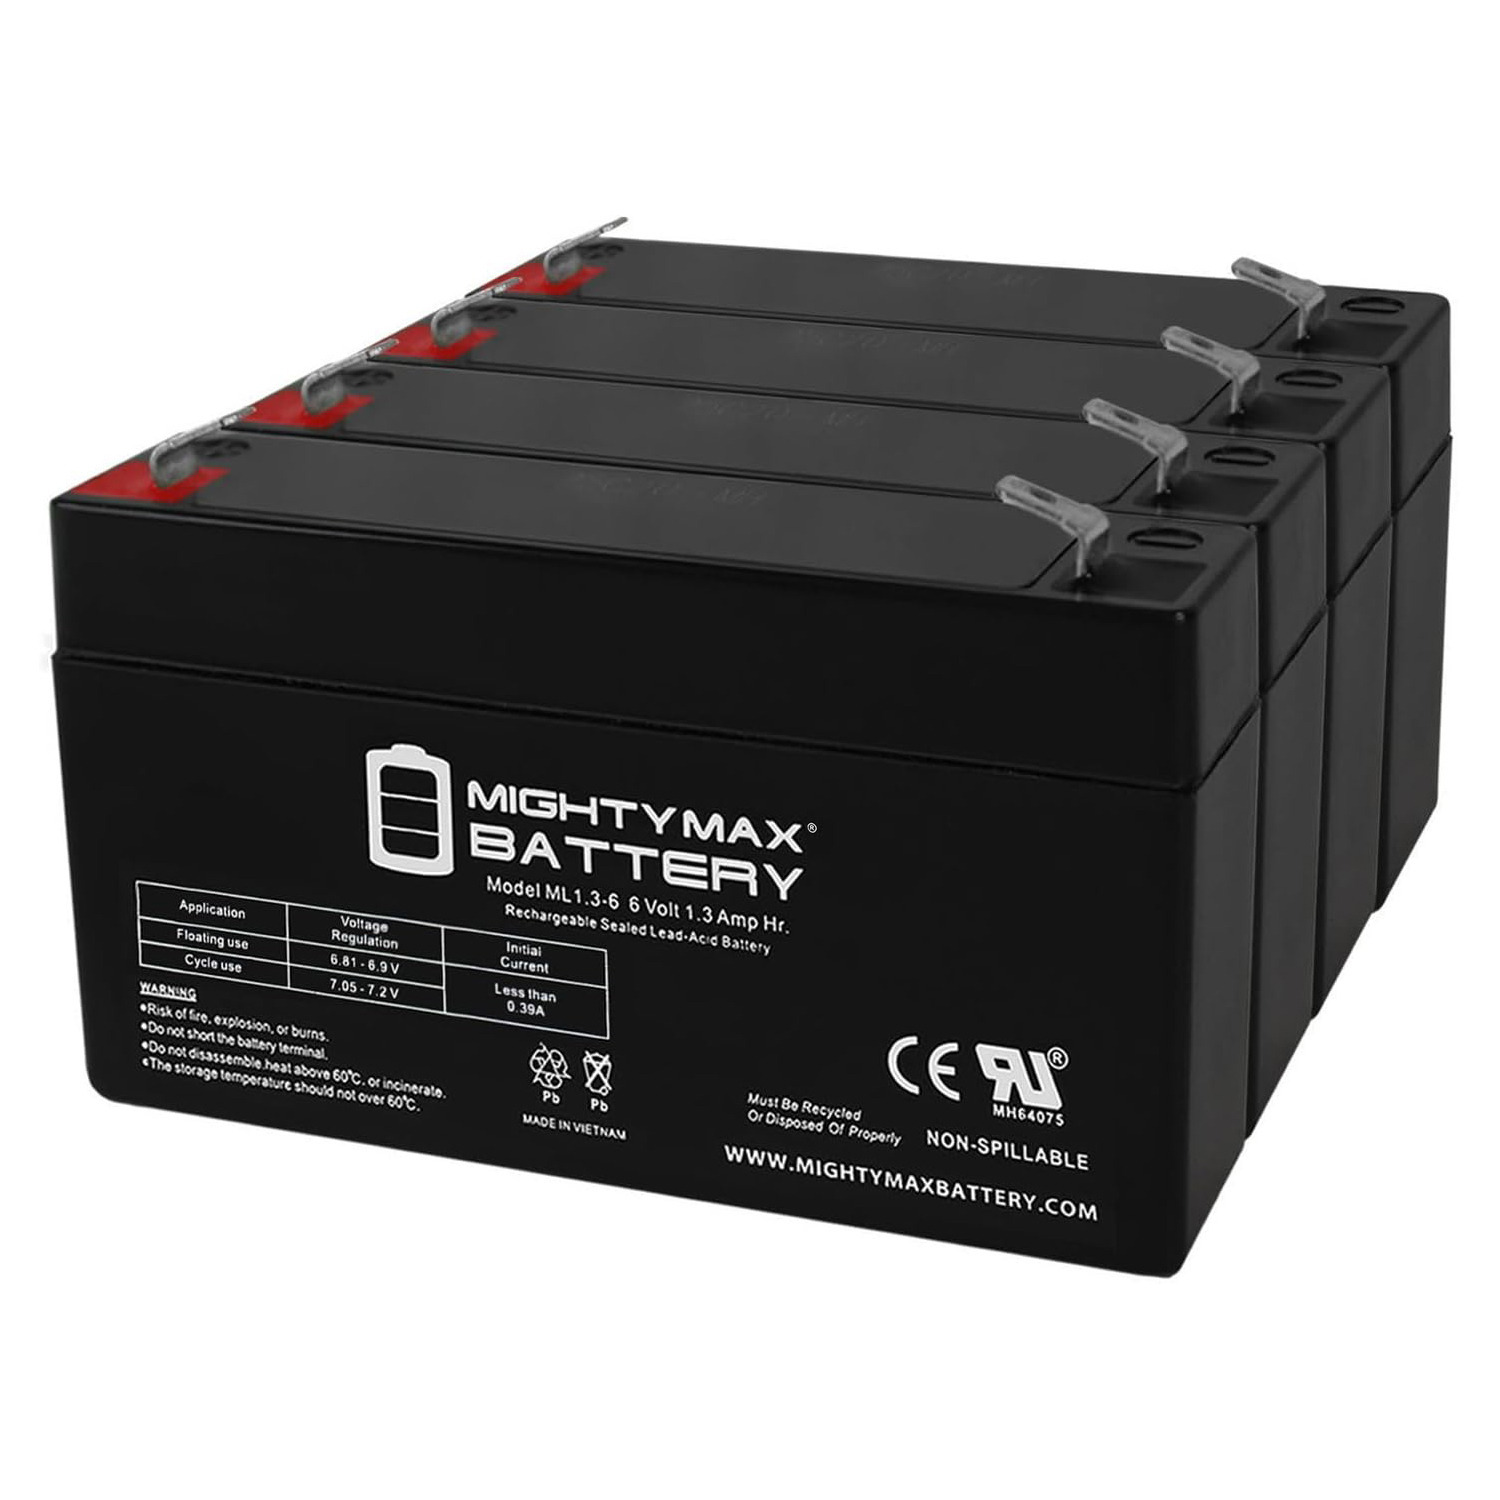 6V 1.3Ah SLA Replacement Battery for Elk ELK-0613 - 4 Pack